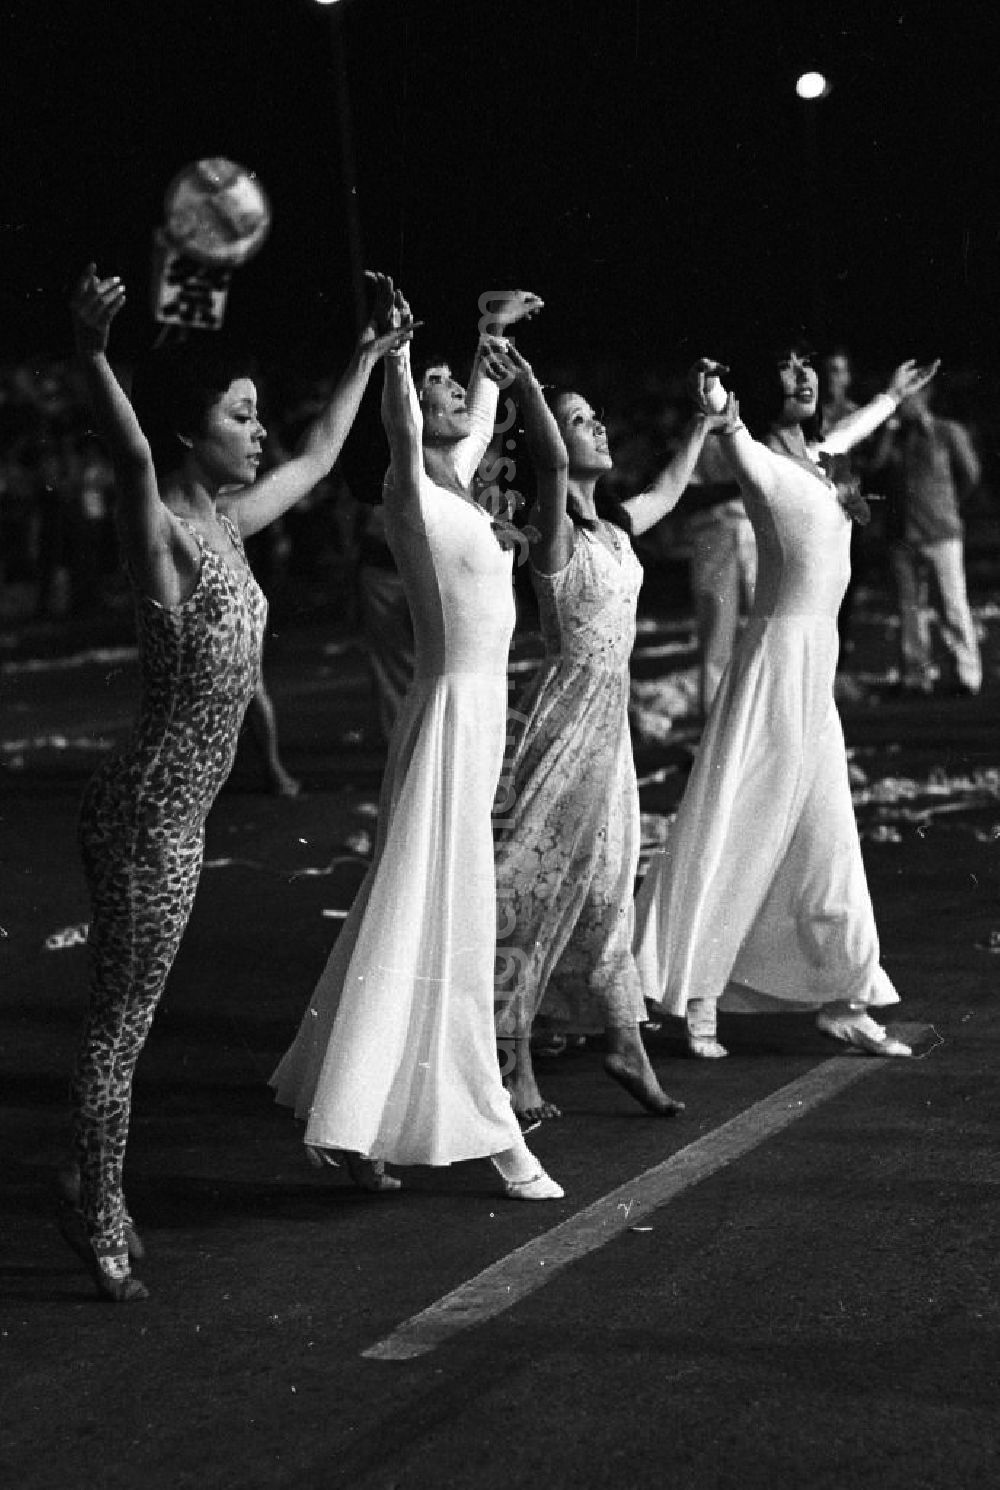 Havanna: Internationaler Karneval während der XI. Weltfestspiele vom 28.07. - 05.08.1978. Tänzerinnen der Delegation aus Japan. Das Festival stand unter dem Motto: Für antiimperialistische Solidarität, Frieden und Freundschaft. 18.500 Jugendliche aus 145 Ländern nahmen teil, darunter 20